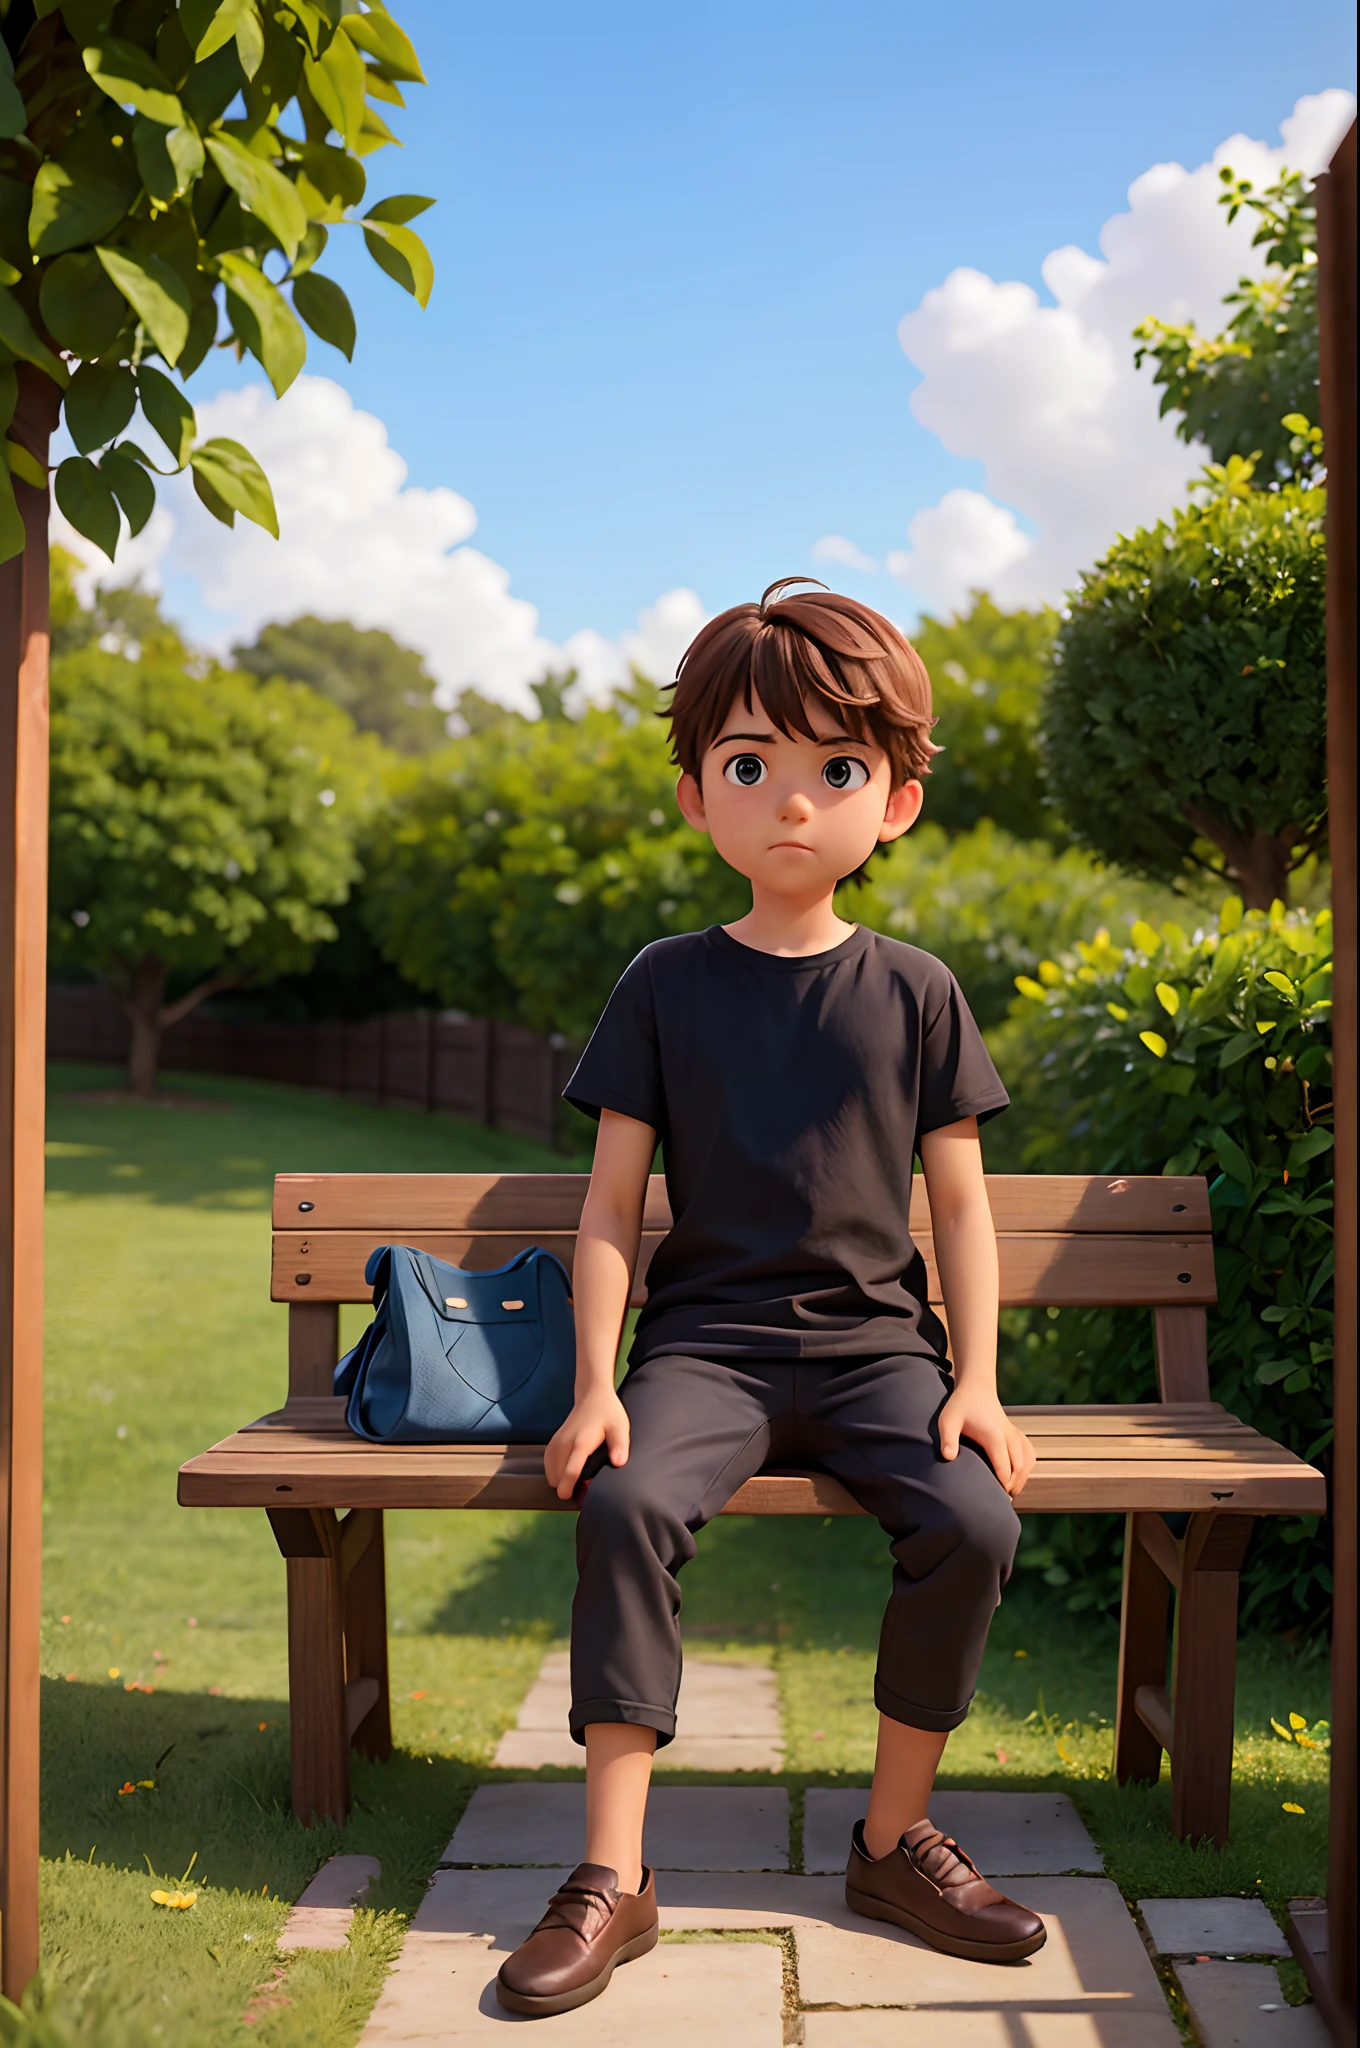 圖像中一個小男孩坐在木凳上, 位於柵欄附近. 這個男孩穿著一件黑色襯衫，似乎正在看著鏡頭. 長椅位於場景中央, 柵欄延伸到影像的左側和右側. 男孩的姿勢和長凳的存在表明這可能是公園或類似的戶外環境.以動畫風格產生此圖像